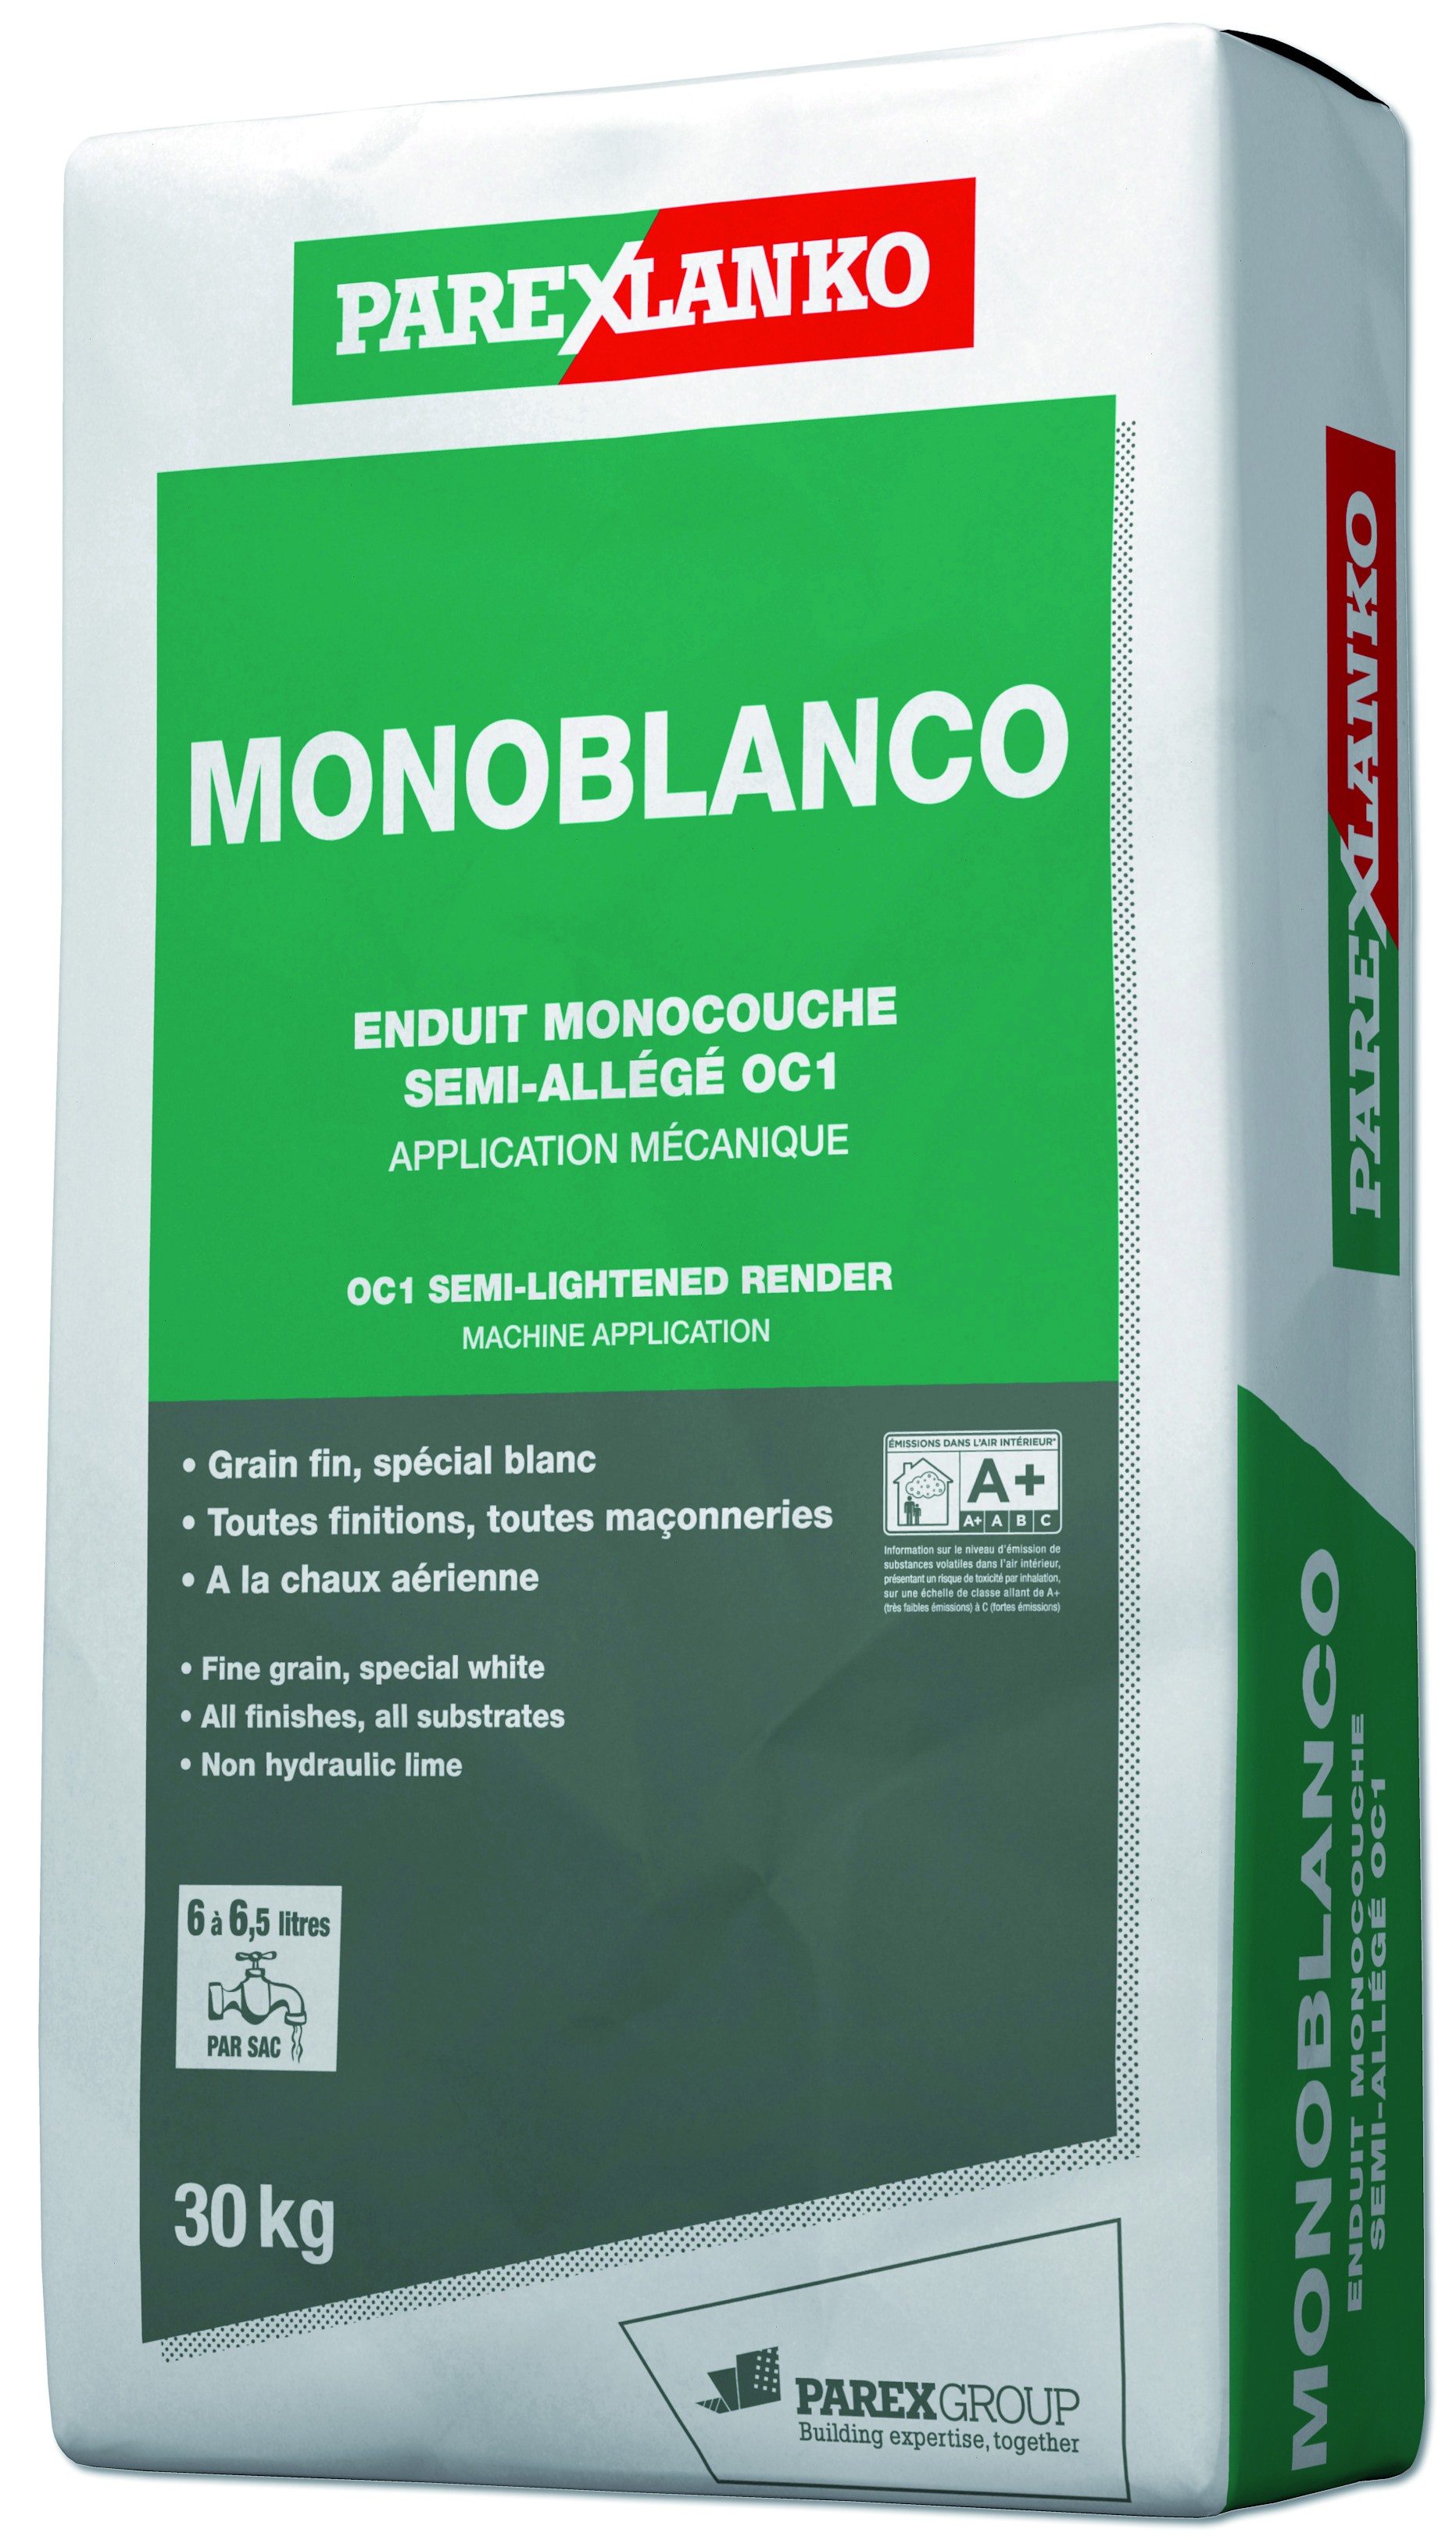 Enduit monocouche semiallégé grain fin spécial blanc Monoblanco Parexlanko